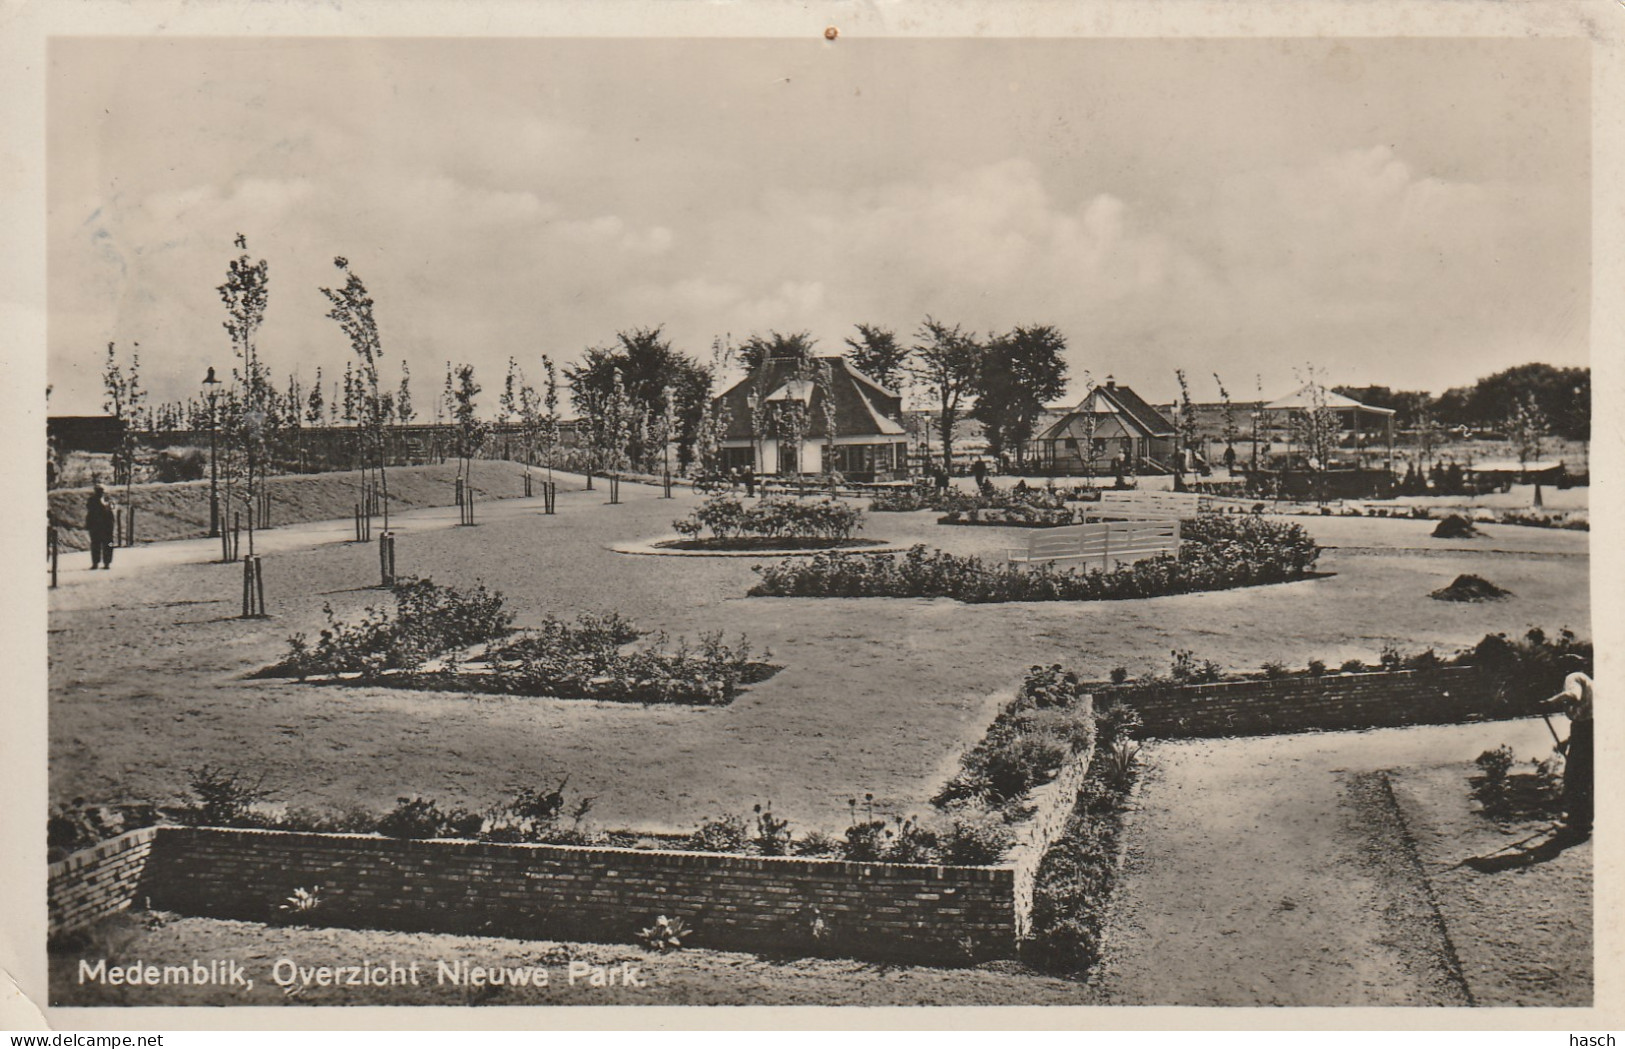 4892102Medemblik, Overzicht Nieuwe Park. 1943. (FOTOKAART) (Kleine Vouwen In De Hoeken, Punaisegaatje)   - Medemblik